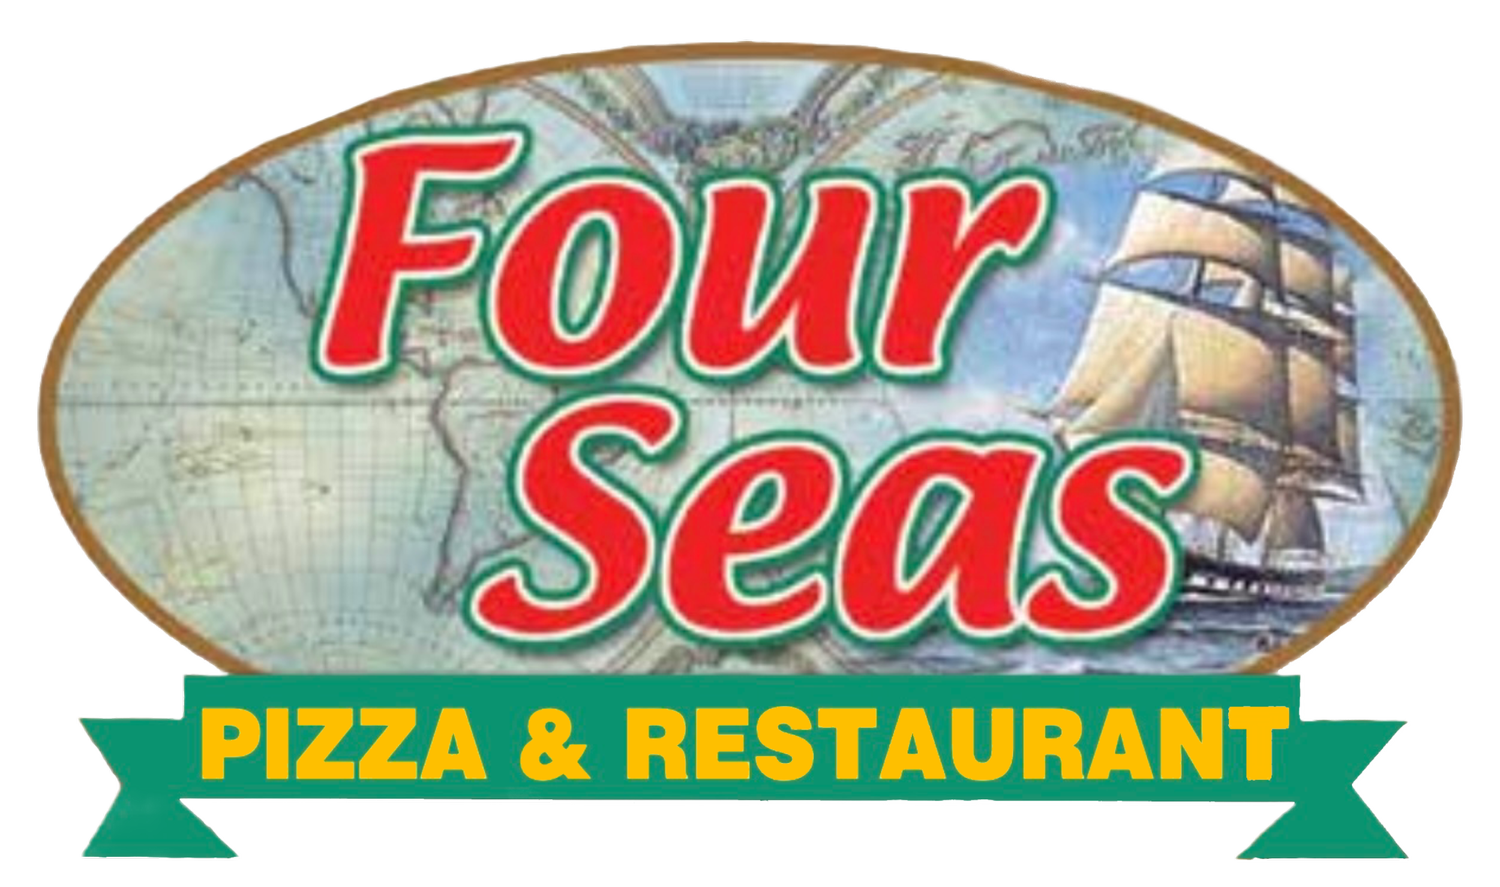 FOUR SEAS PIZZA